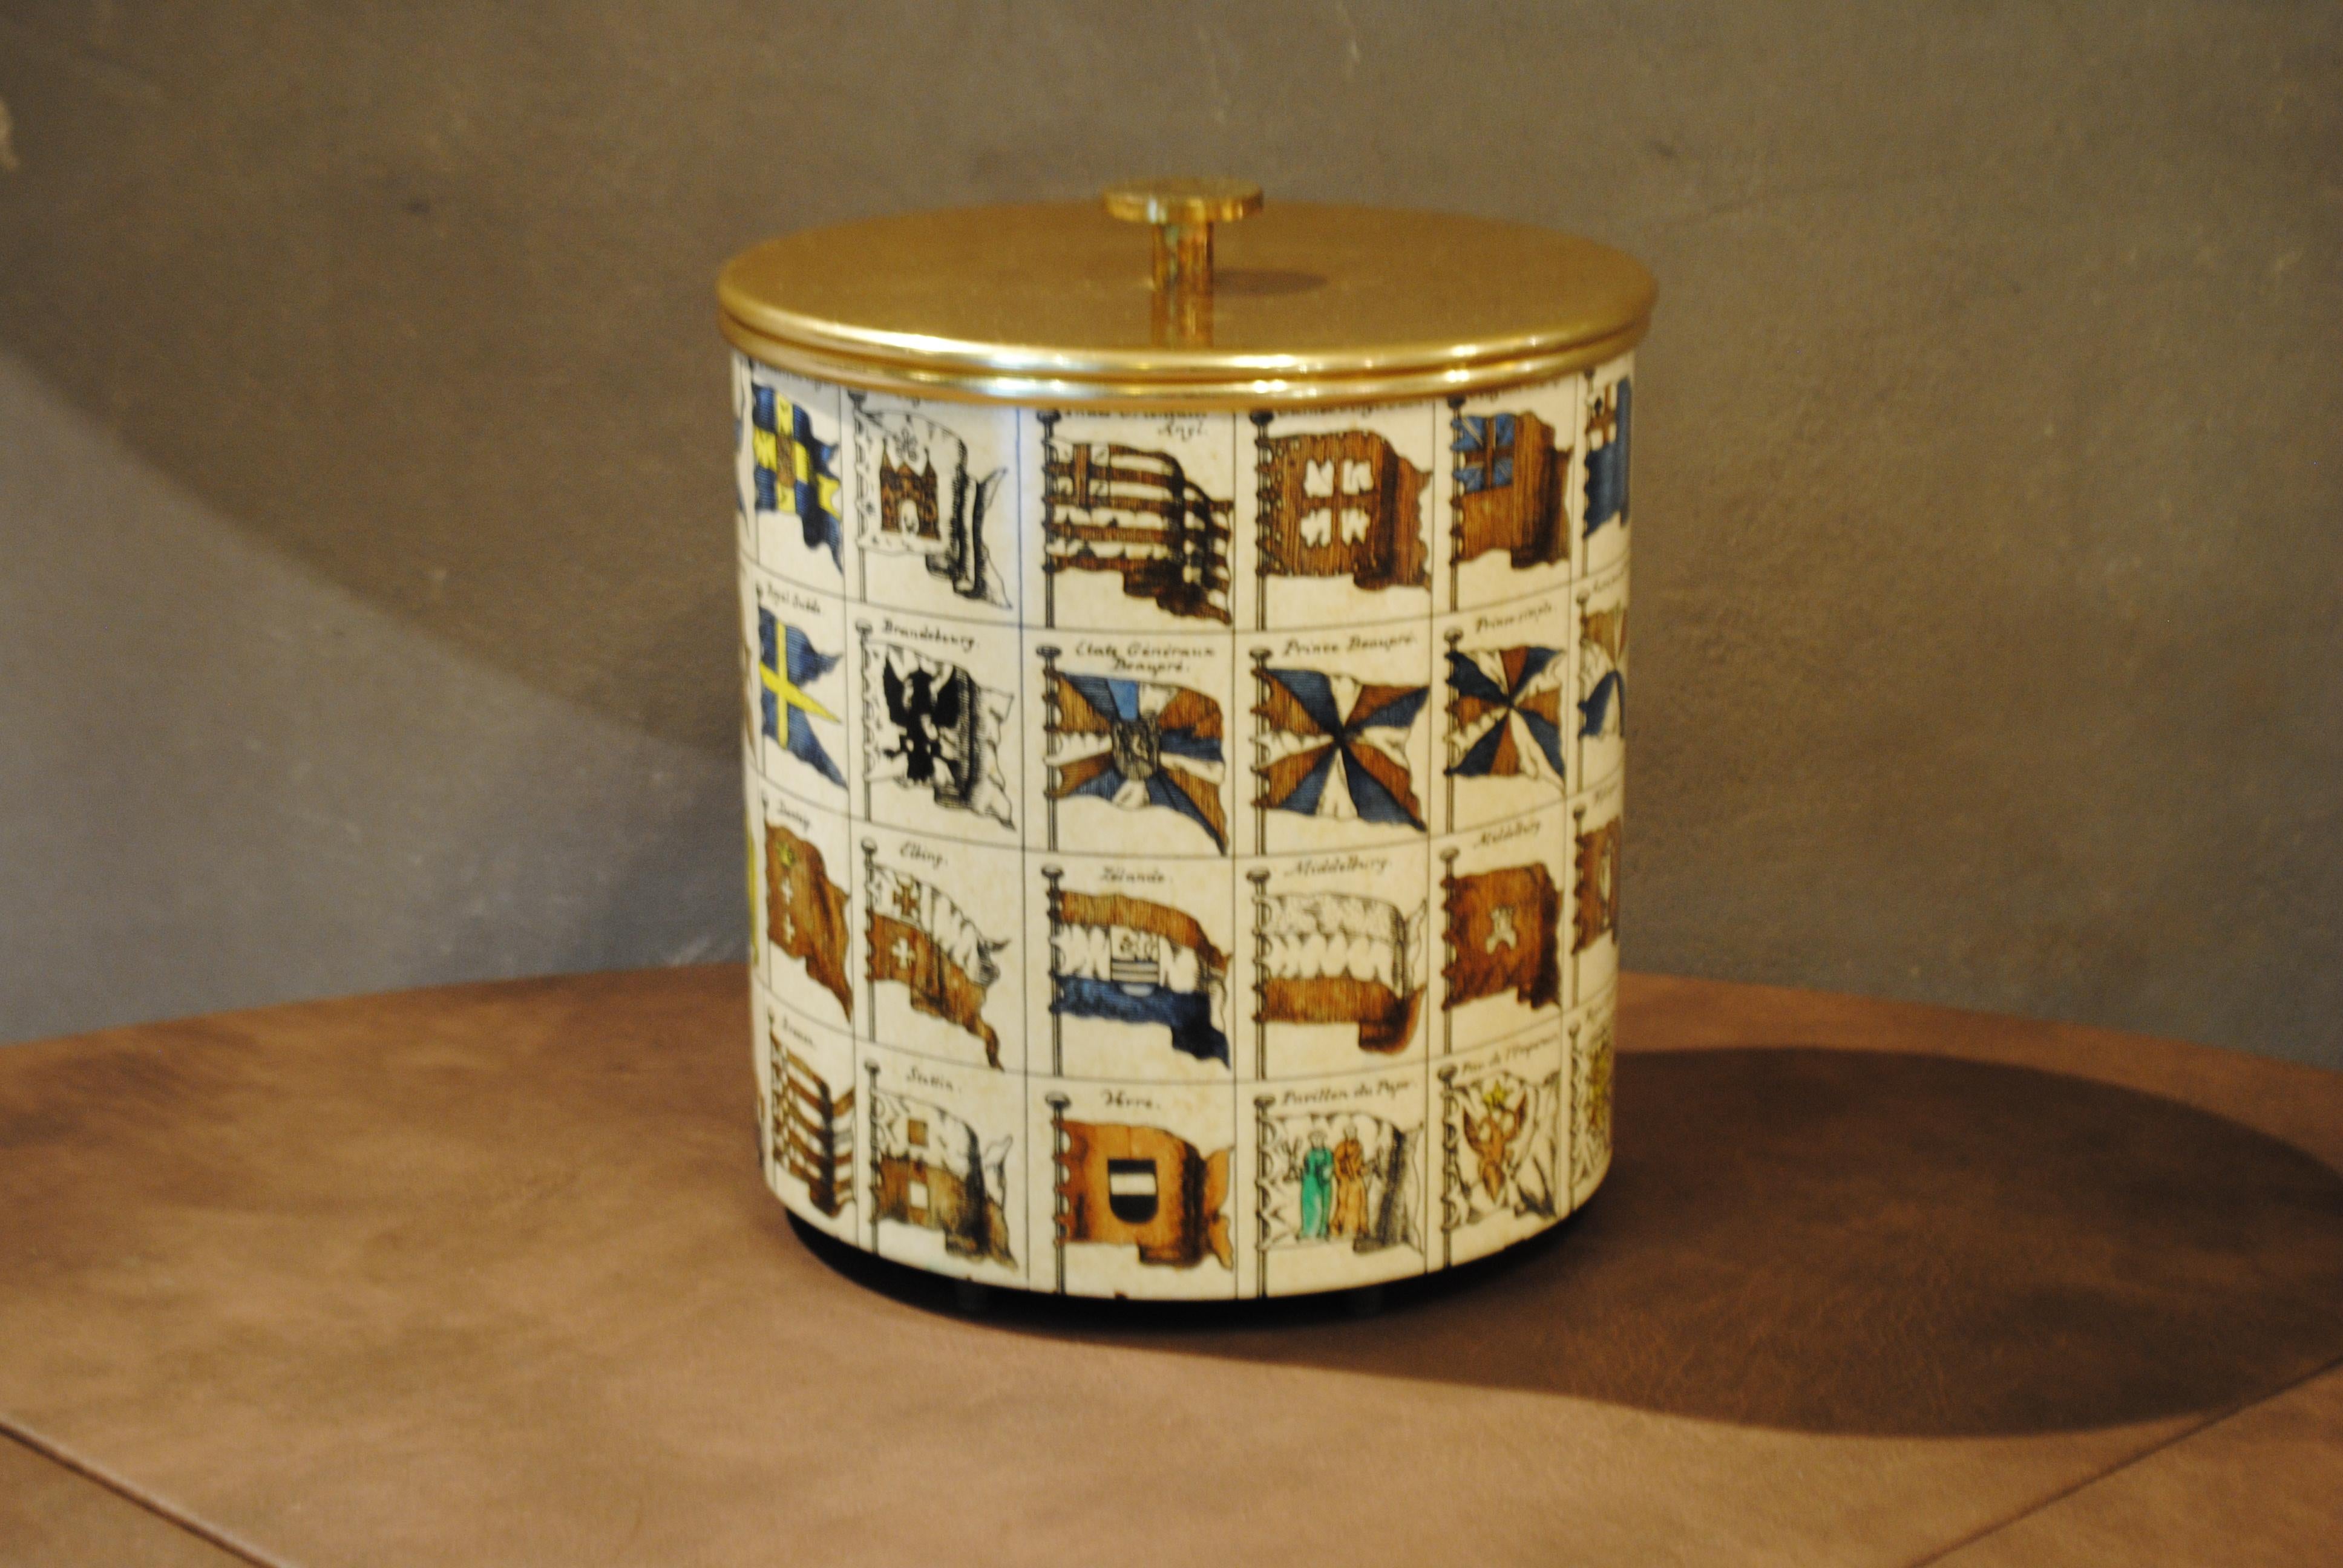 Piero Fornasetti ice box in silk-screened metal and brass.